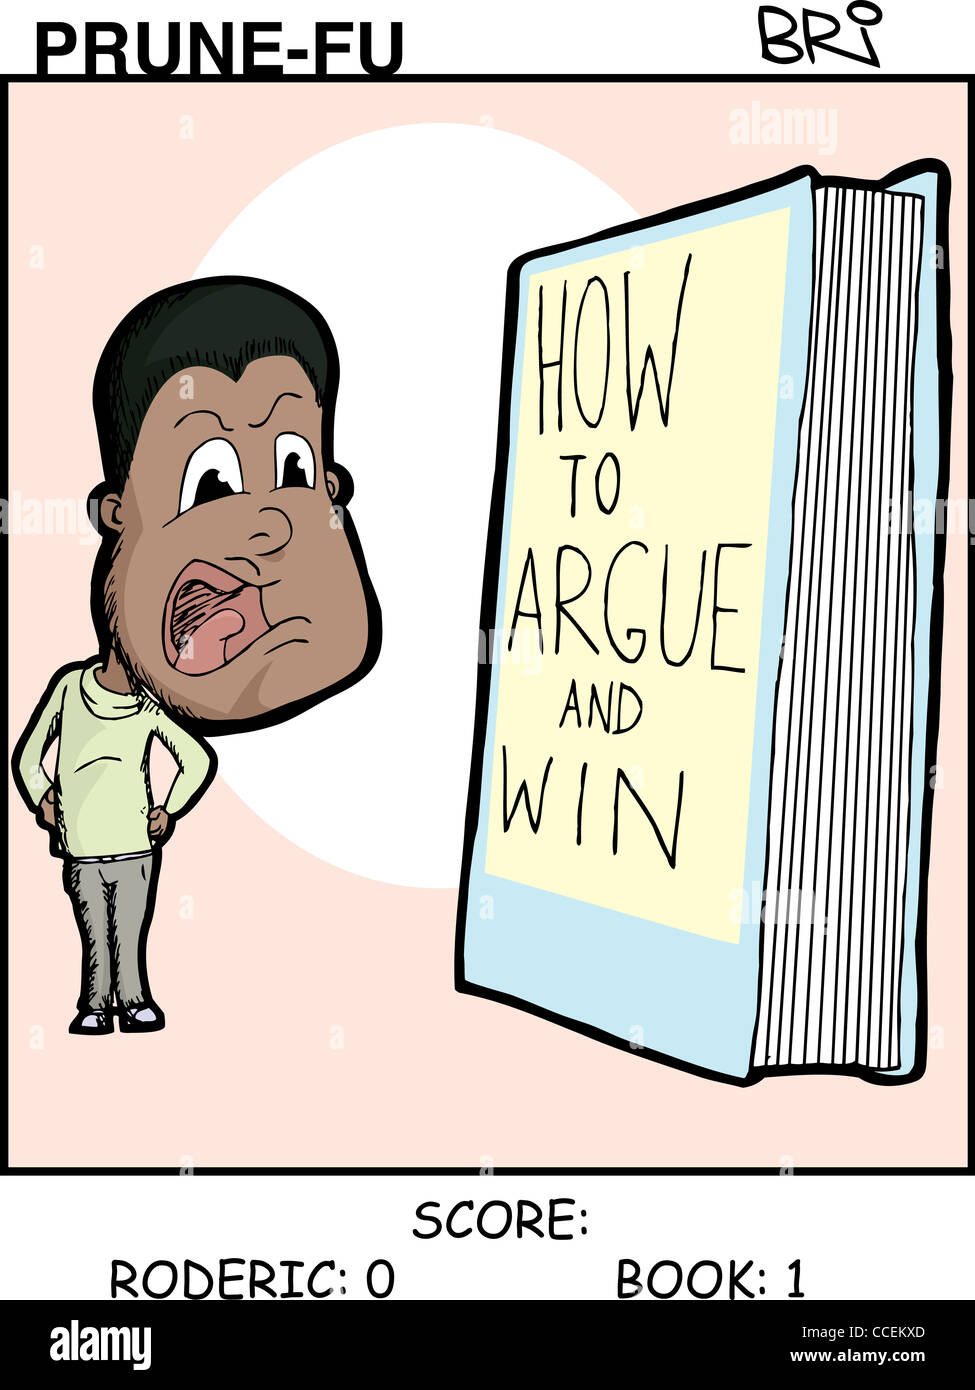 Black man argues with a book Prune-Fu comic strip 1 Stock Photo